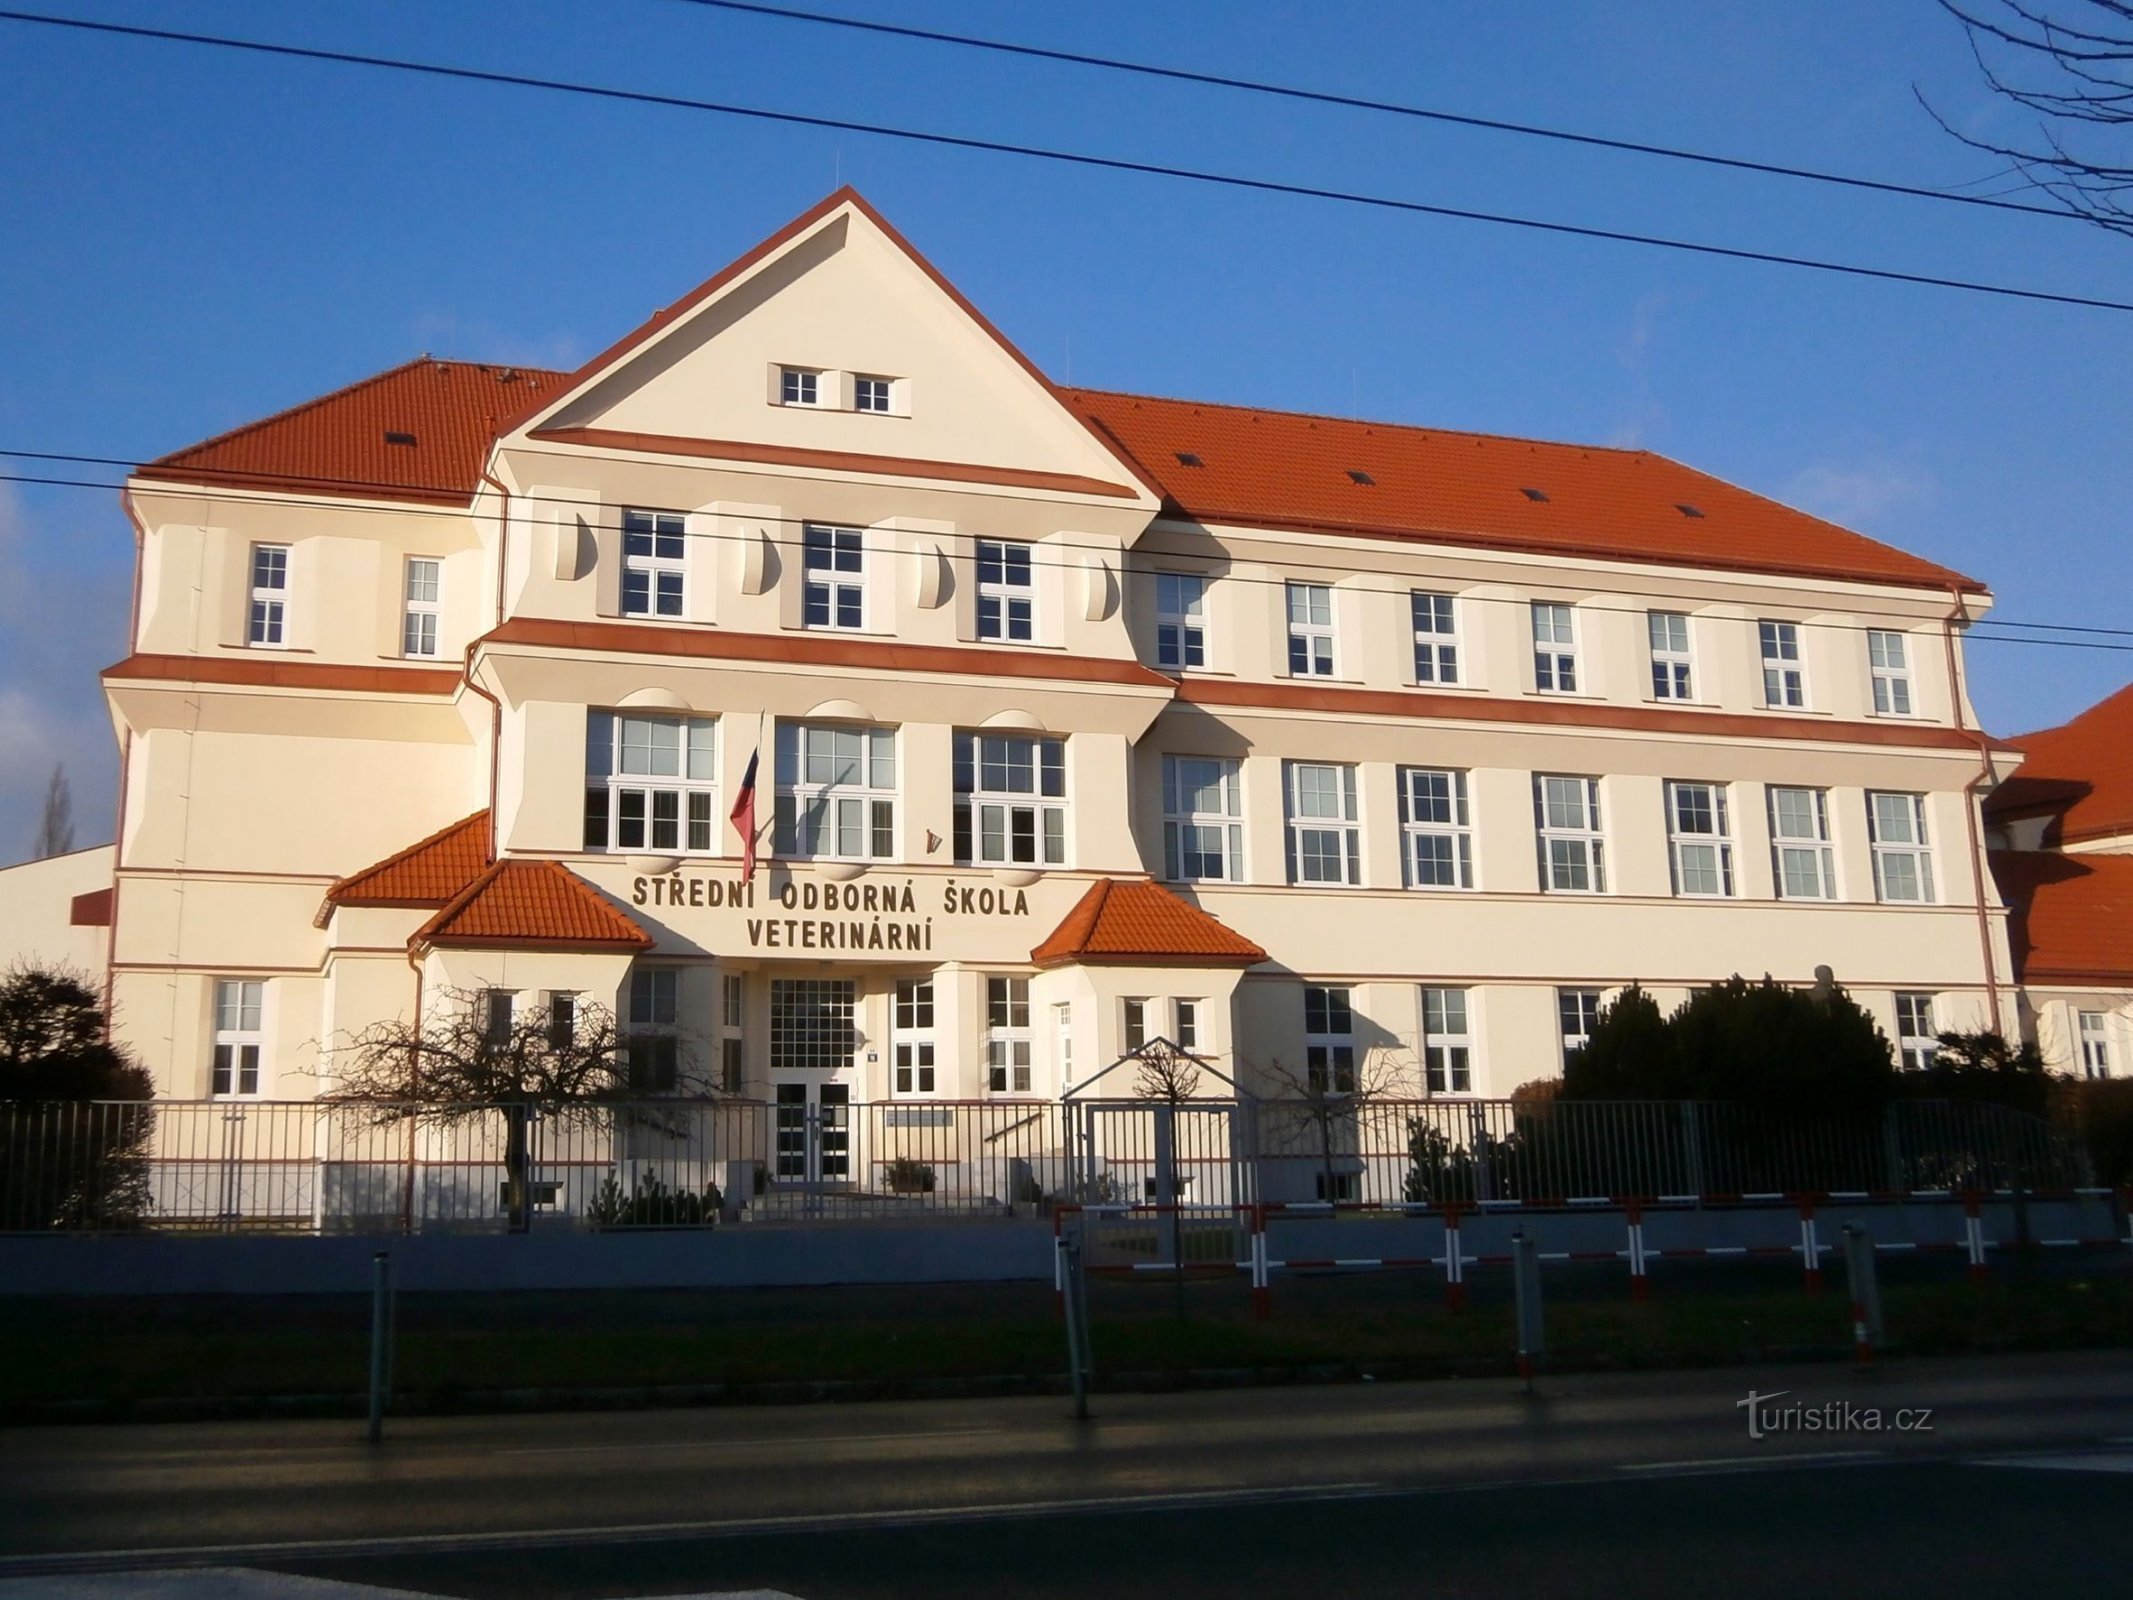 Det nuværende udseende af bygningen til erhvervsskolen for økonomi i Kukleny (Hradec Králové, 4.1.2015. januar XNUMX)